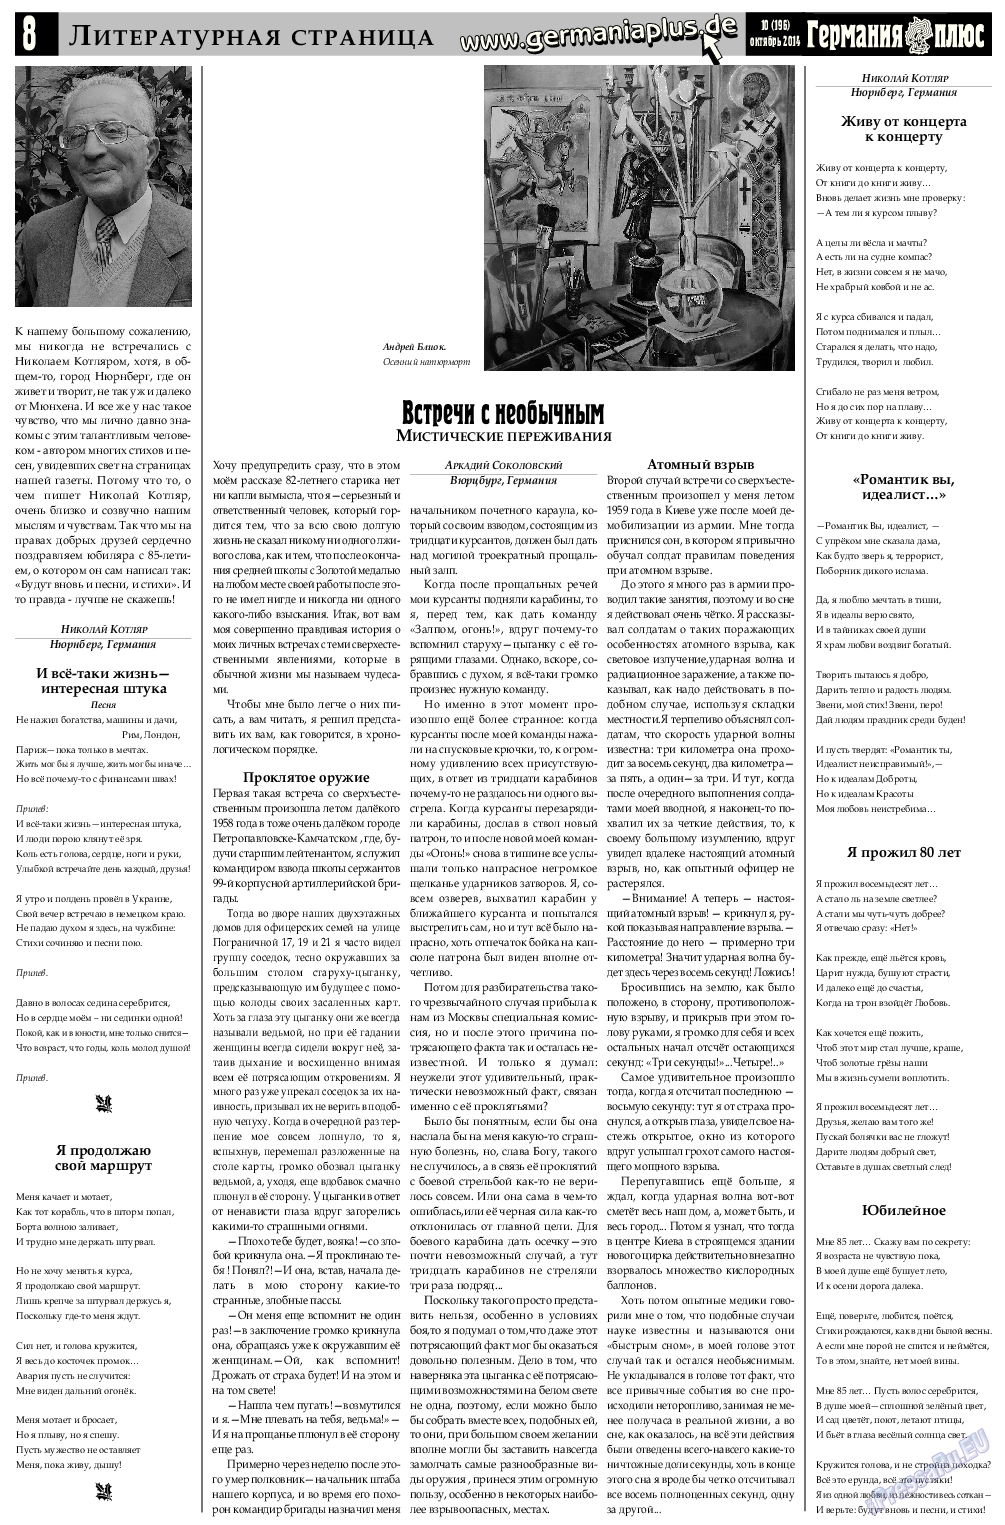 Германия плюс (газета). 2014 год, номер 9, стр. 8